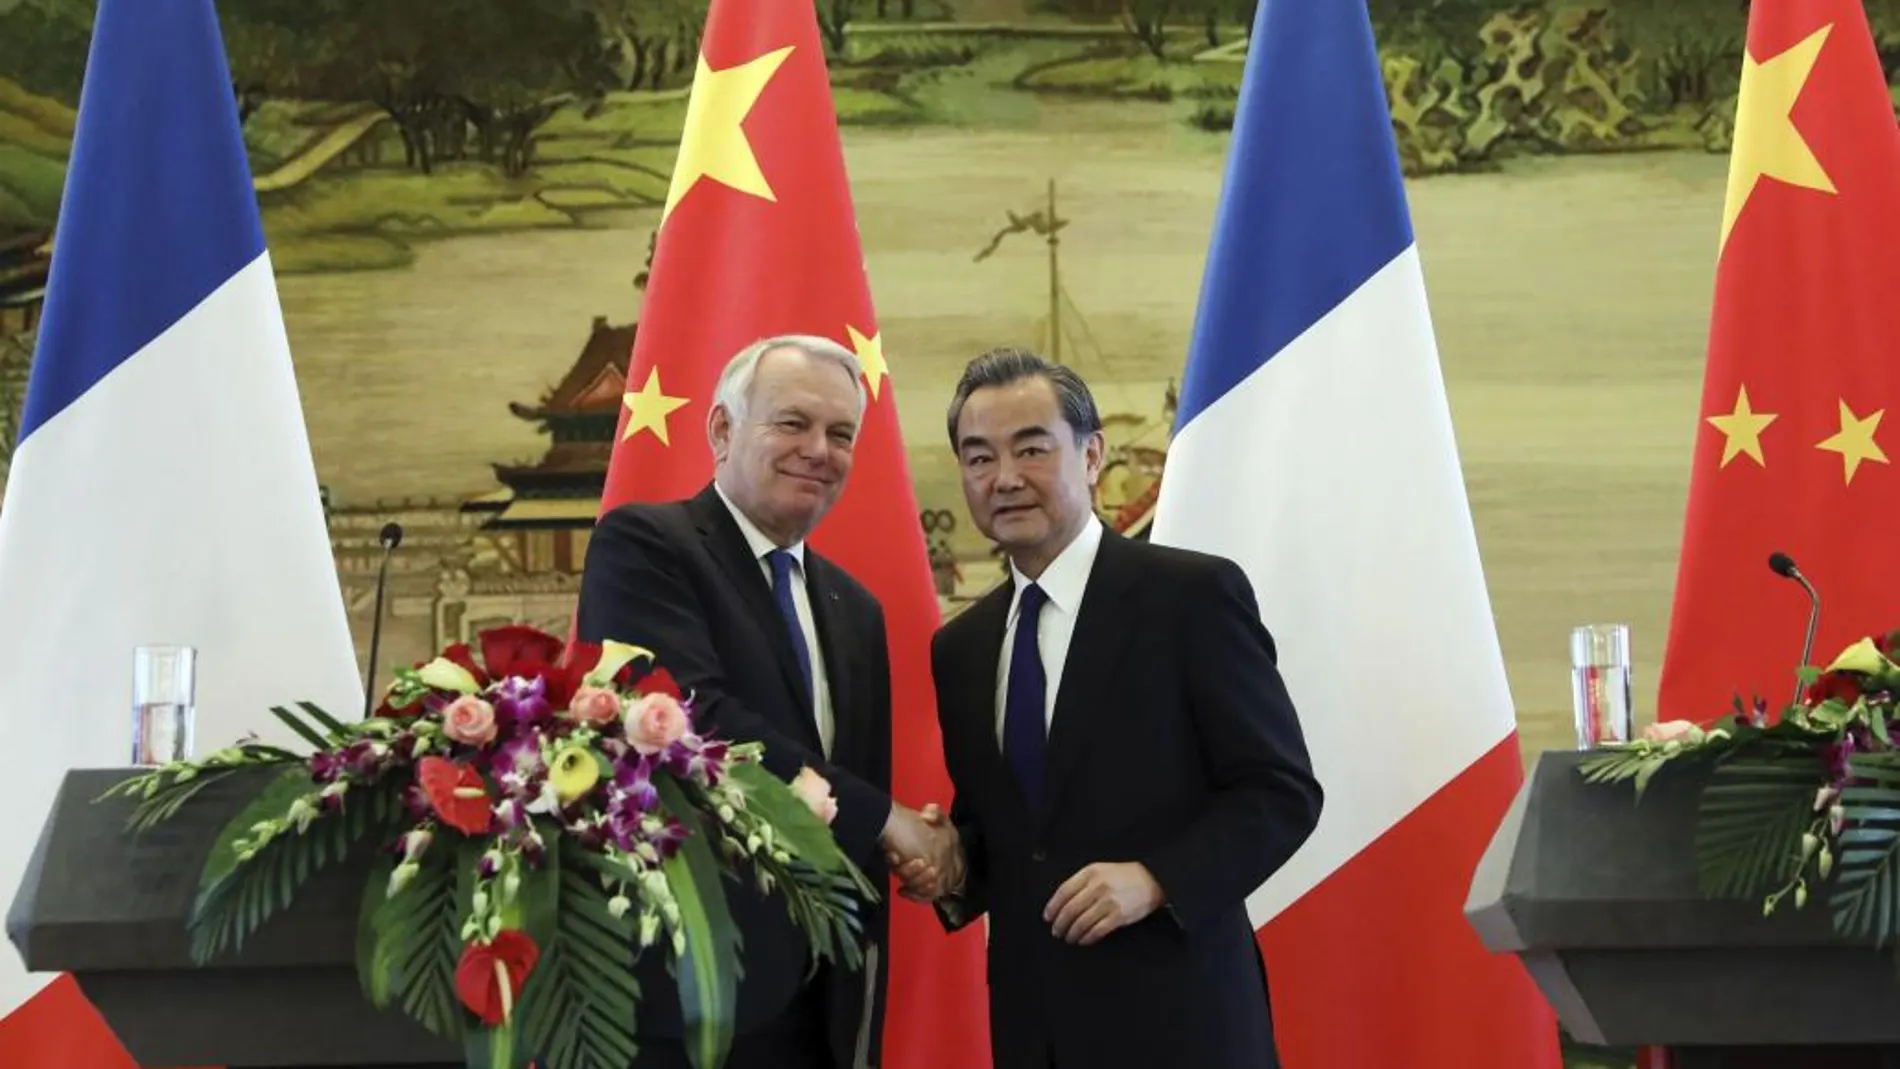 El ministro de Asuntos Exteriores chino, Wang Yi (d), estrecha la mano de su homólogo francés, Jean-Marc Ayrault, durante una rueda de prensa conjunta.